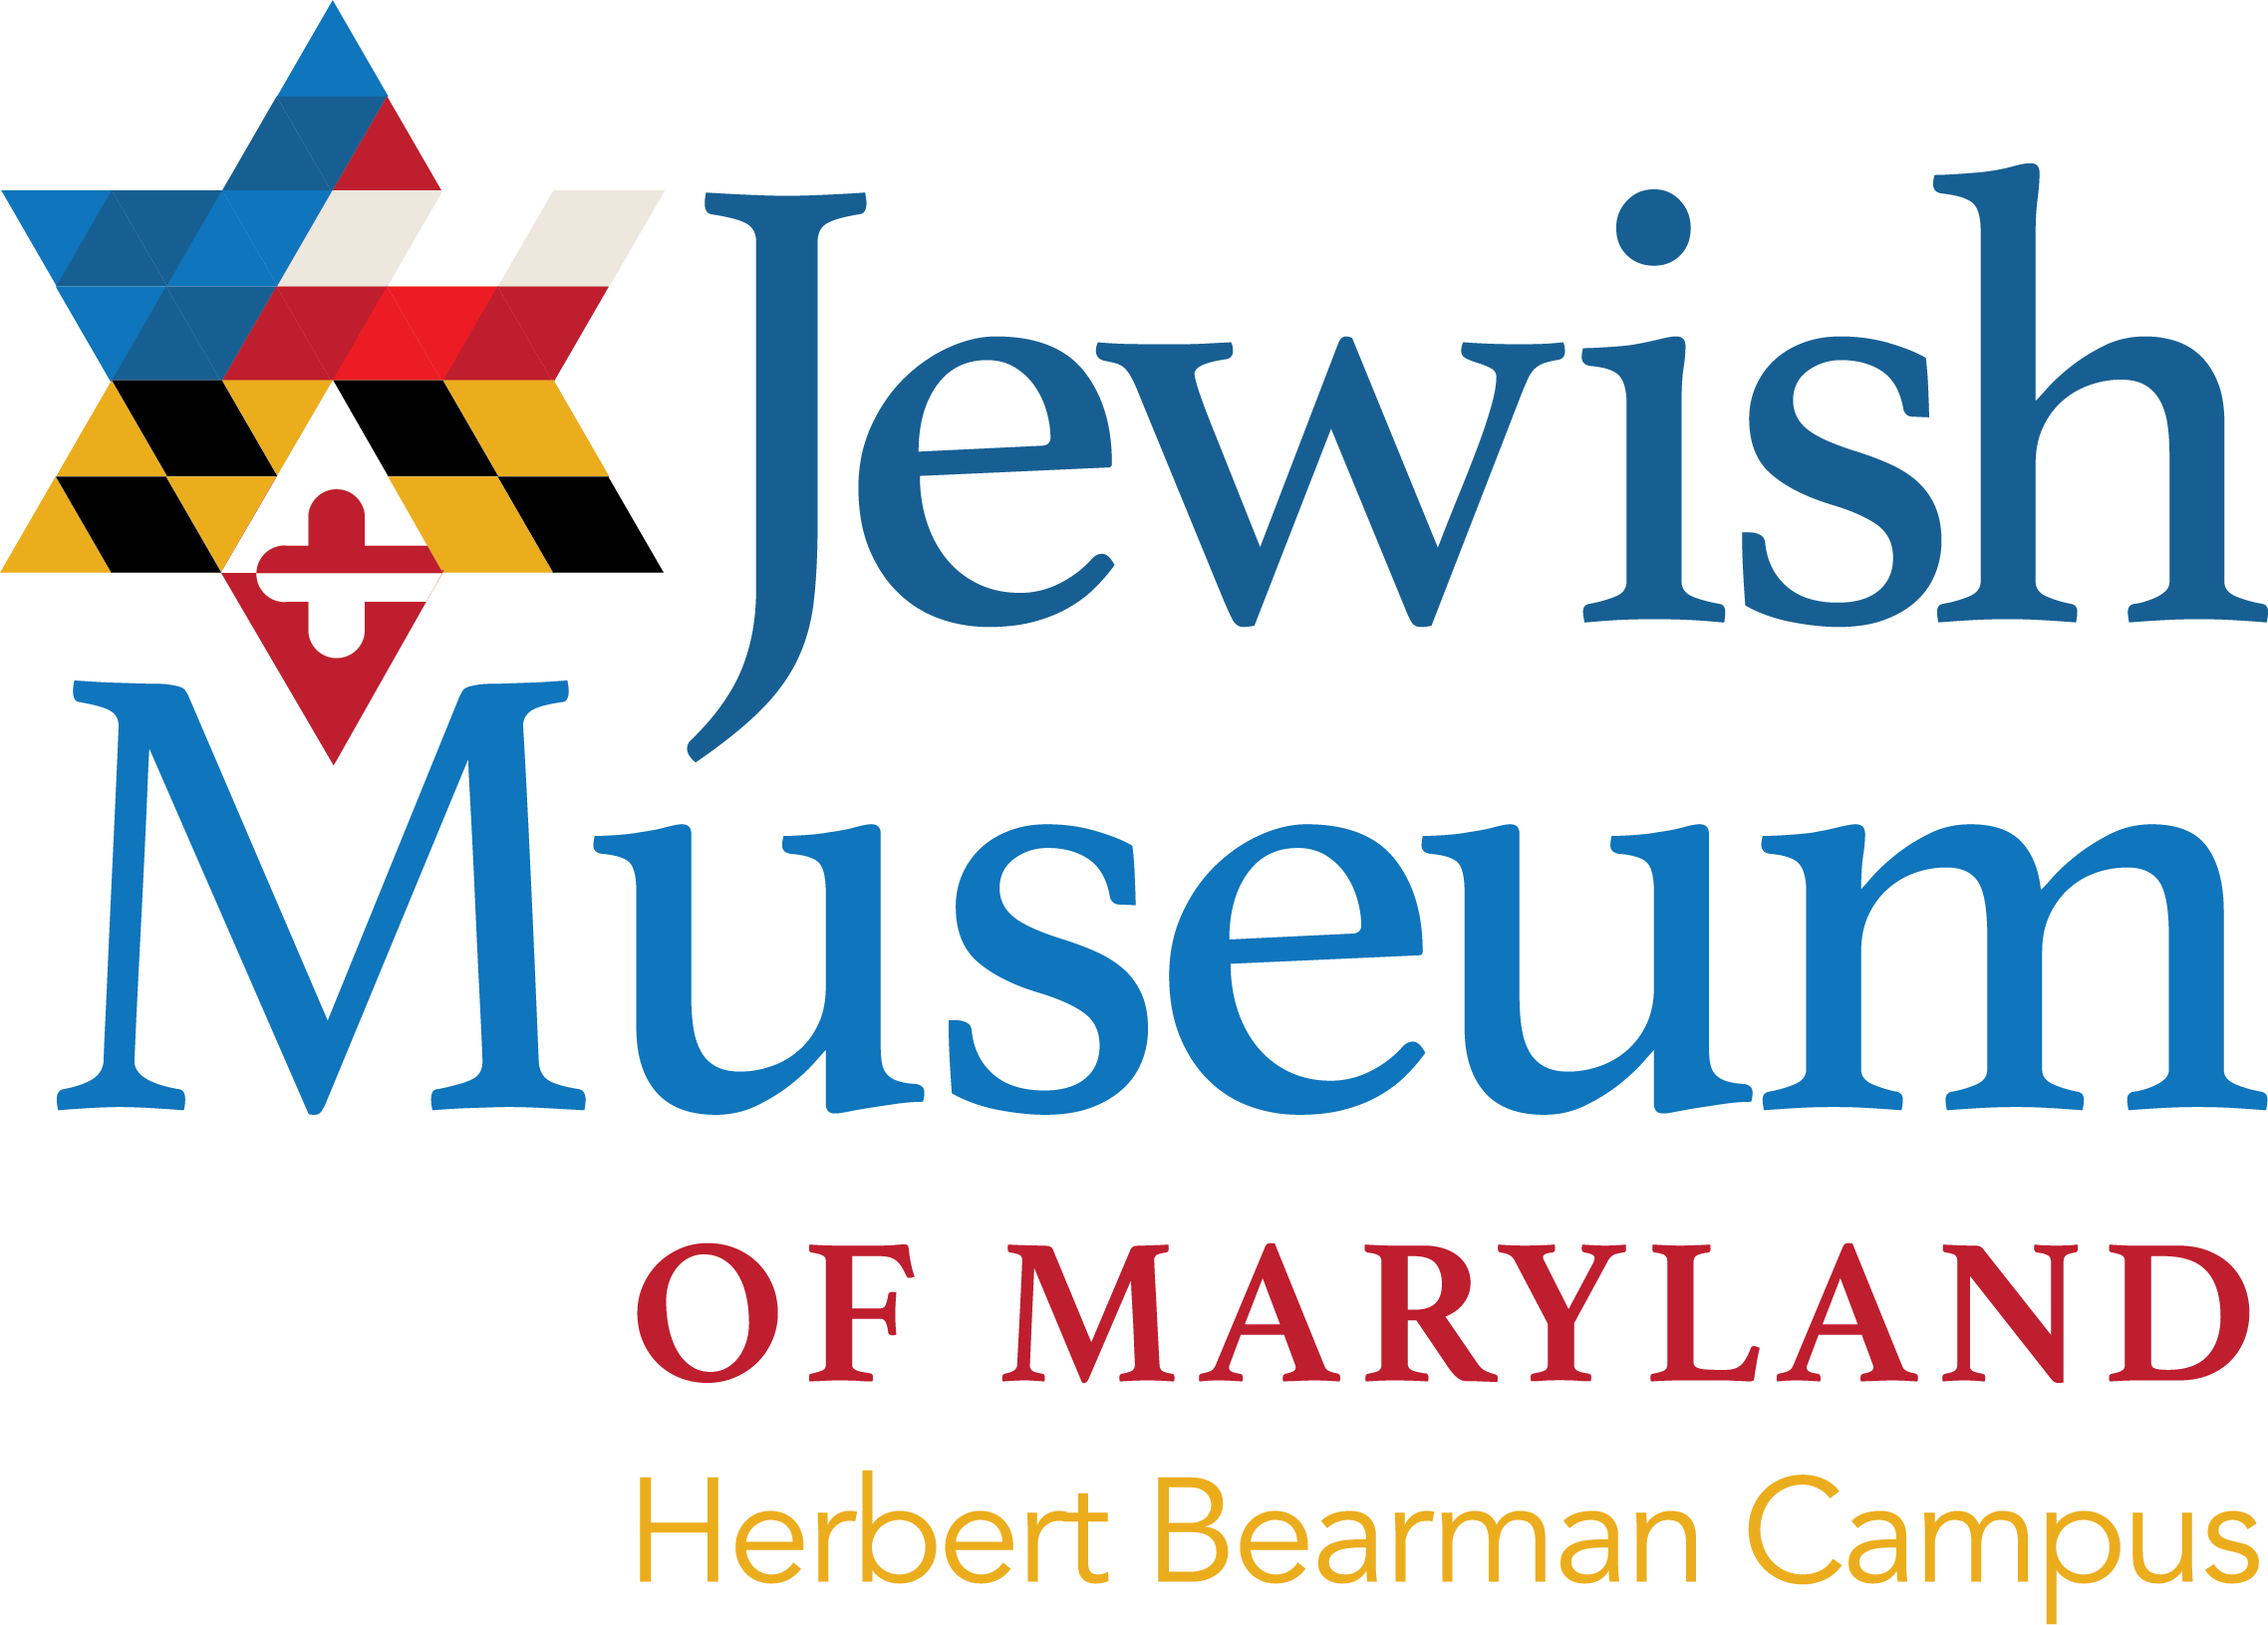 Jewish Museum of Maryland